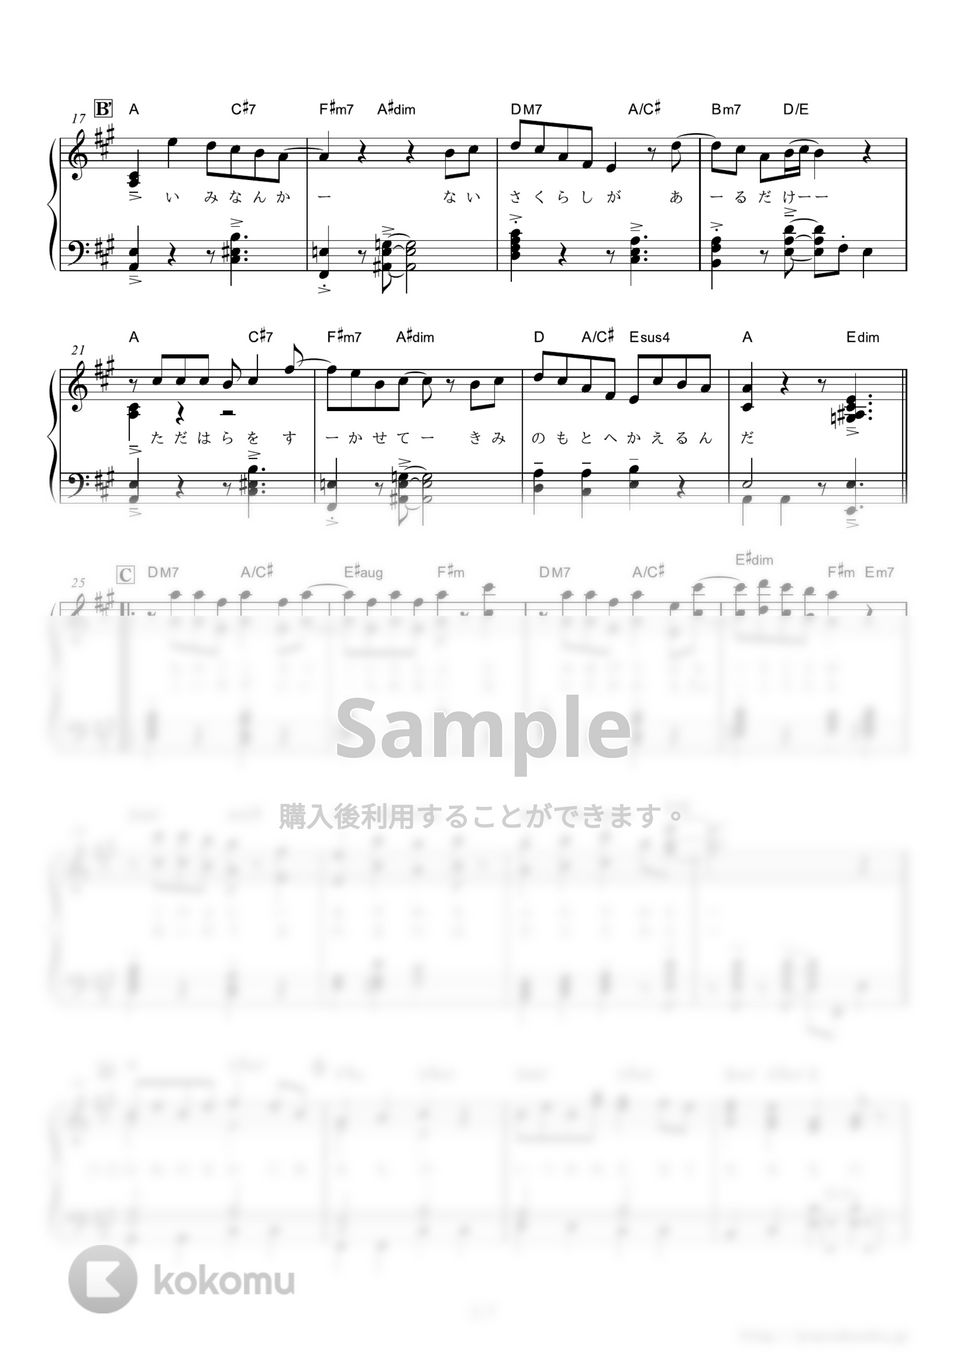 星野源 - 恋 (ドラマ『逃げるは恥だが役に立つ』主題歌) by ピアノの本棚